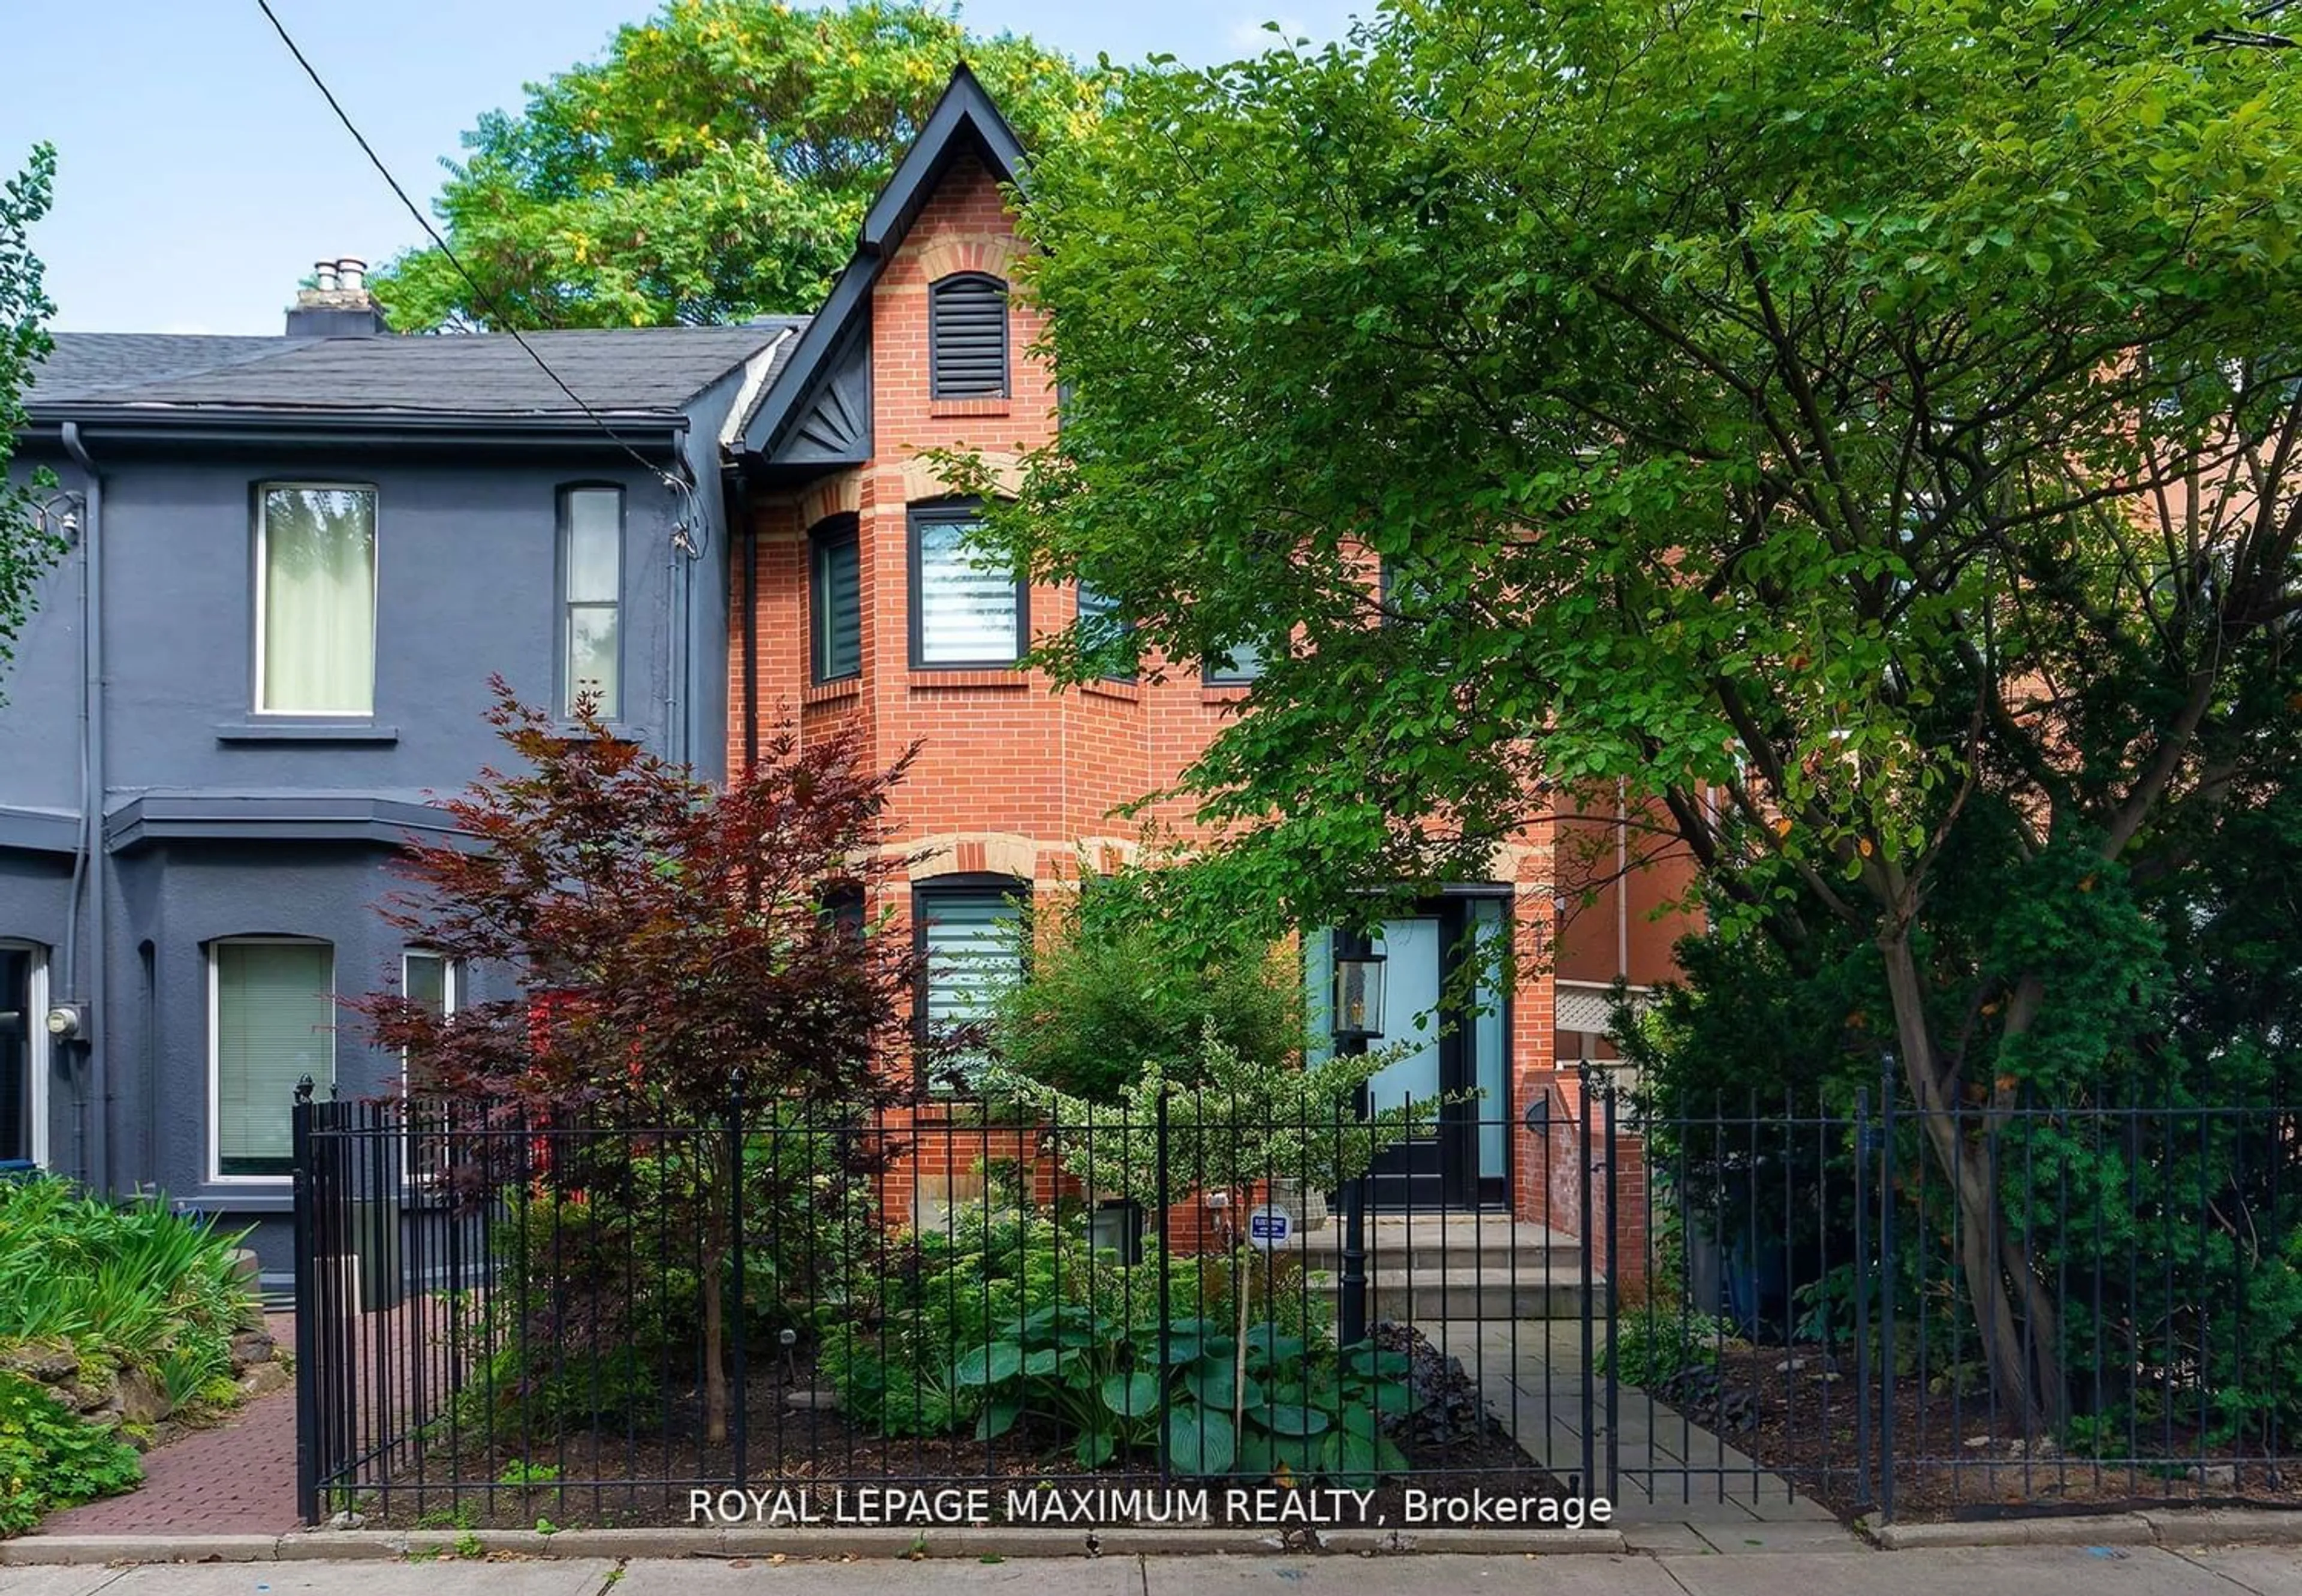 Home with brick exterior material for 307 Ontario St, Toronto Ontario M5A 2V8